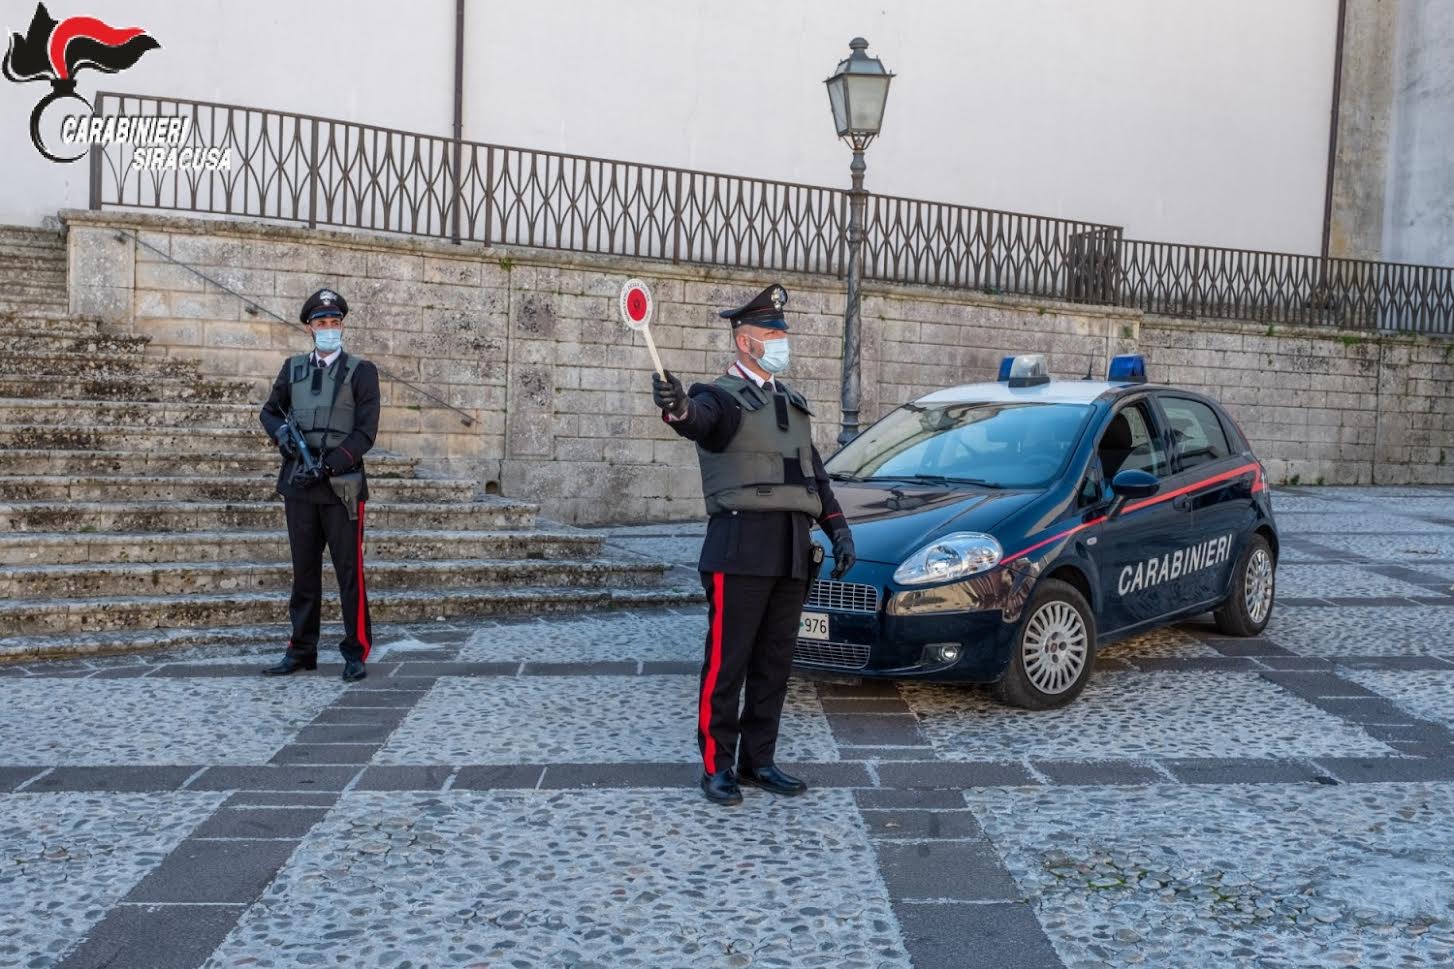 Carabinieri “beccano” uomo di 27 anni per detenzione ai fini di spaccio